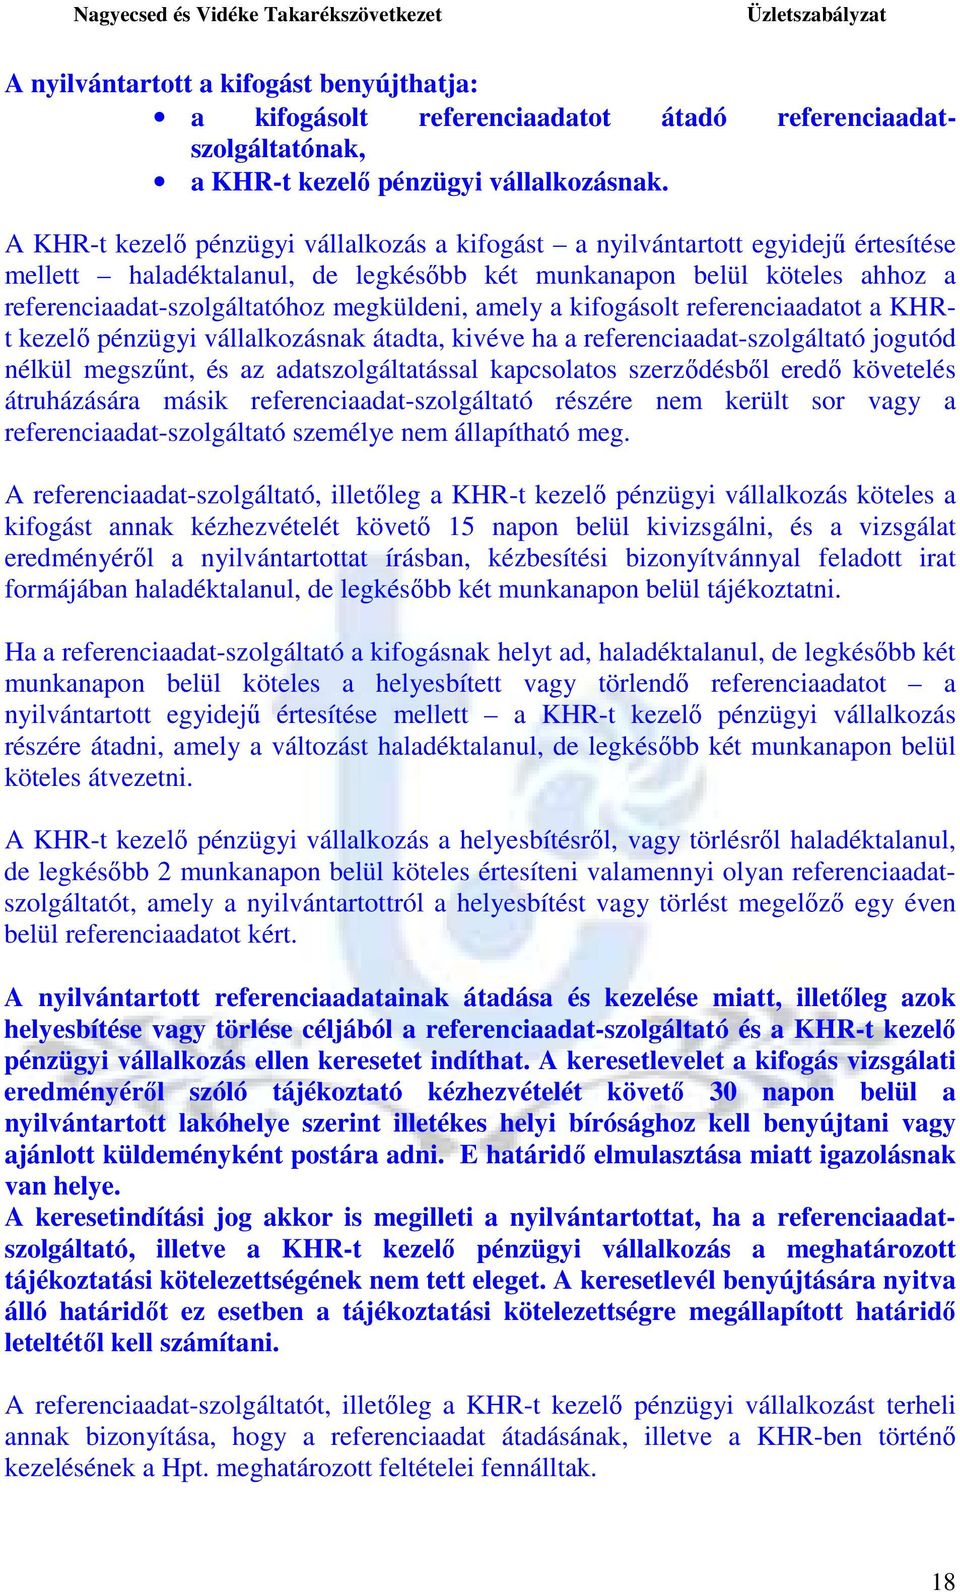 amely a kifogásolt referenciaadatot a KHRt kezelı pénzügyi vállalkozásnak átadta, kivéve ha a referenciaadat-szolgáltató jogutód nélkül megszőnt, és az adatszolgáltatással kapcsolatos szerzıdésbıl